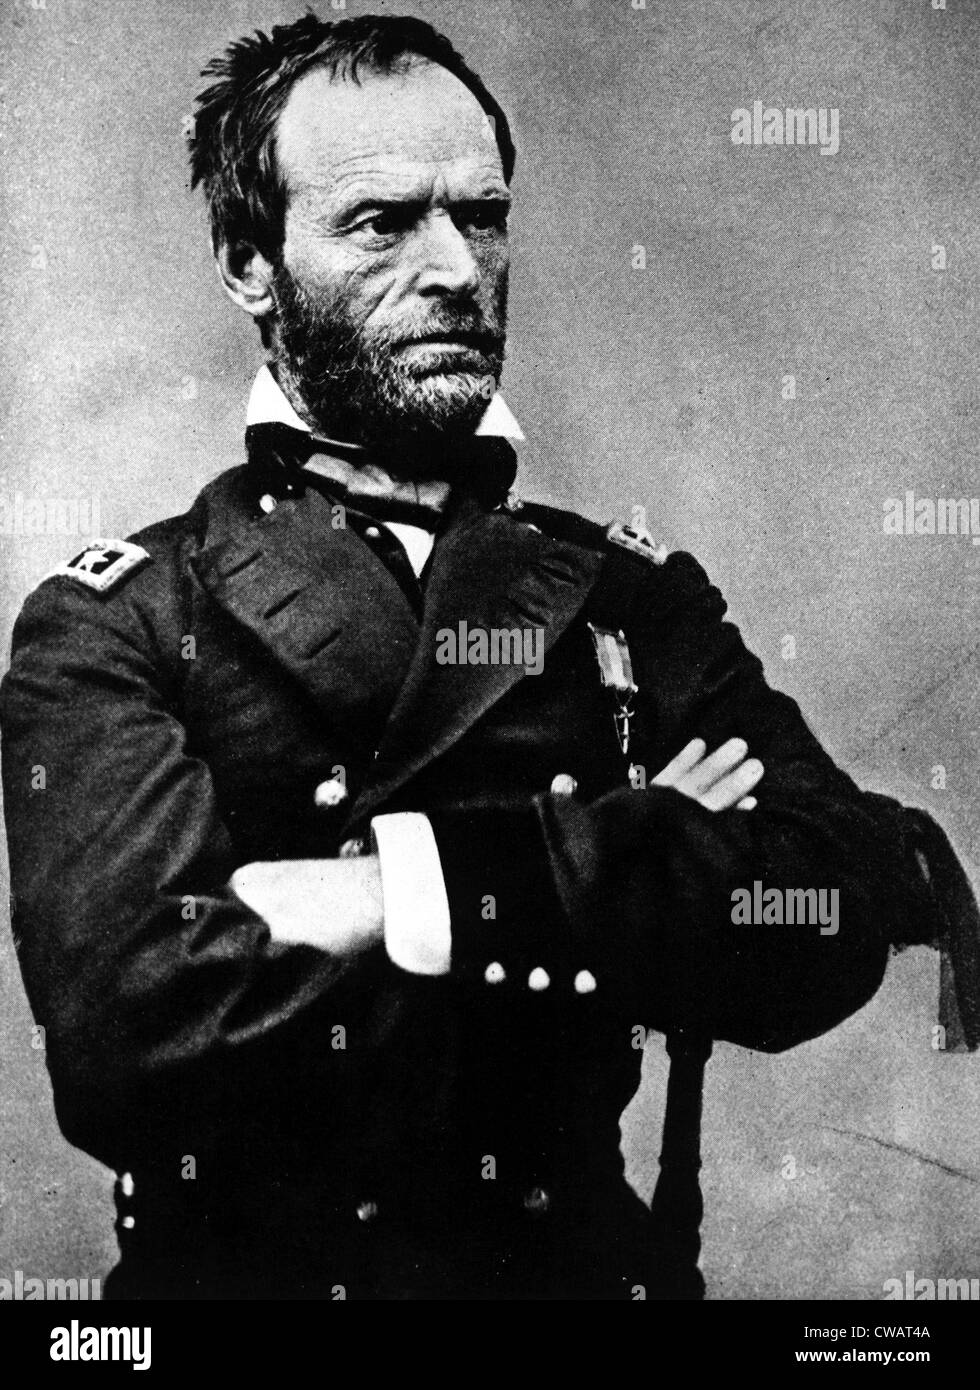 William Tecumseh Sherman, während des Bürgerkrieges, der 1860er Jahre. Höflichkeit: CSU Archive / Everett Collection Stockfoto